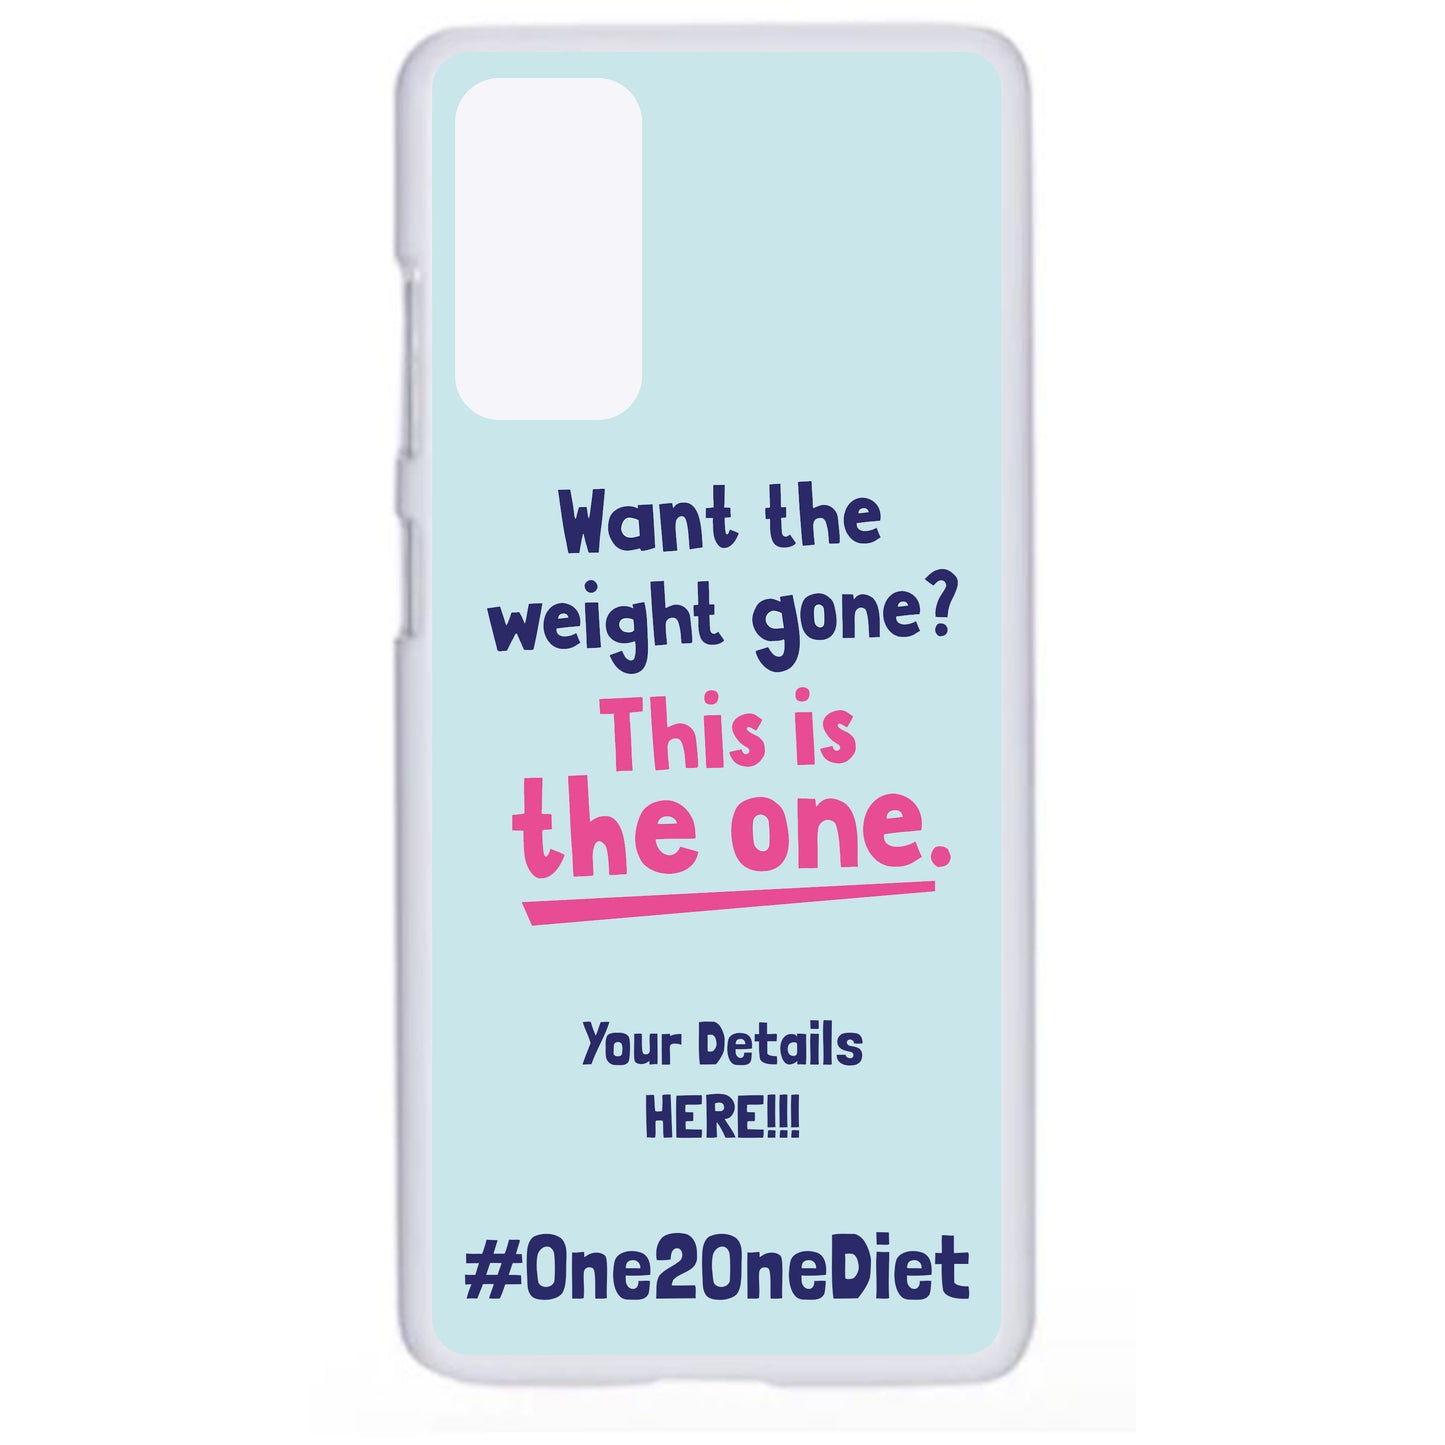 The 1:1 Diet - Samsung Phone Case